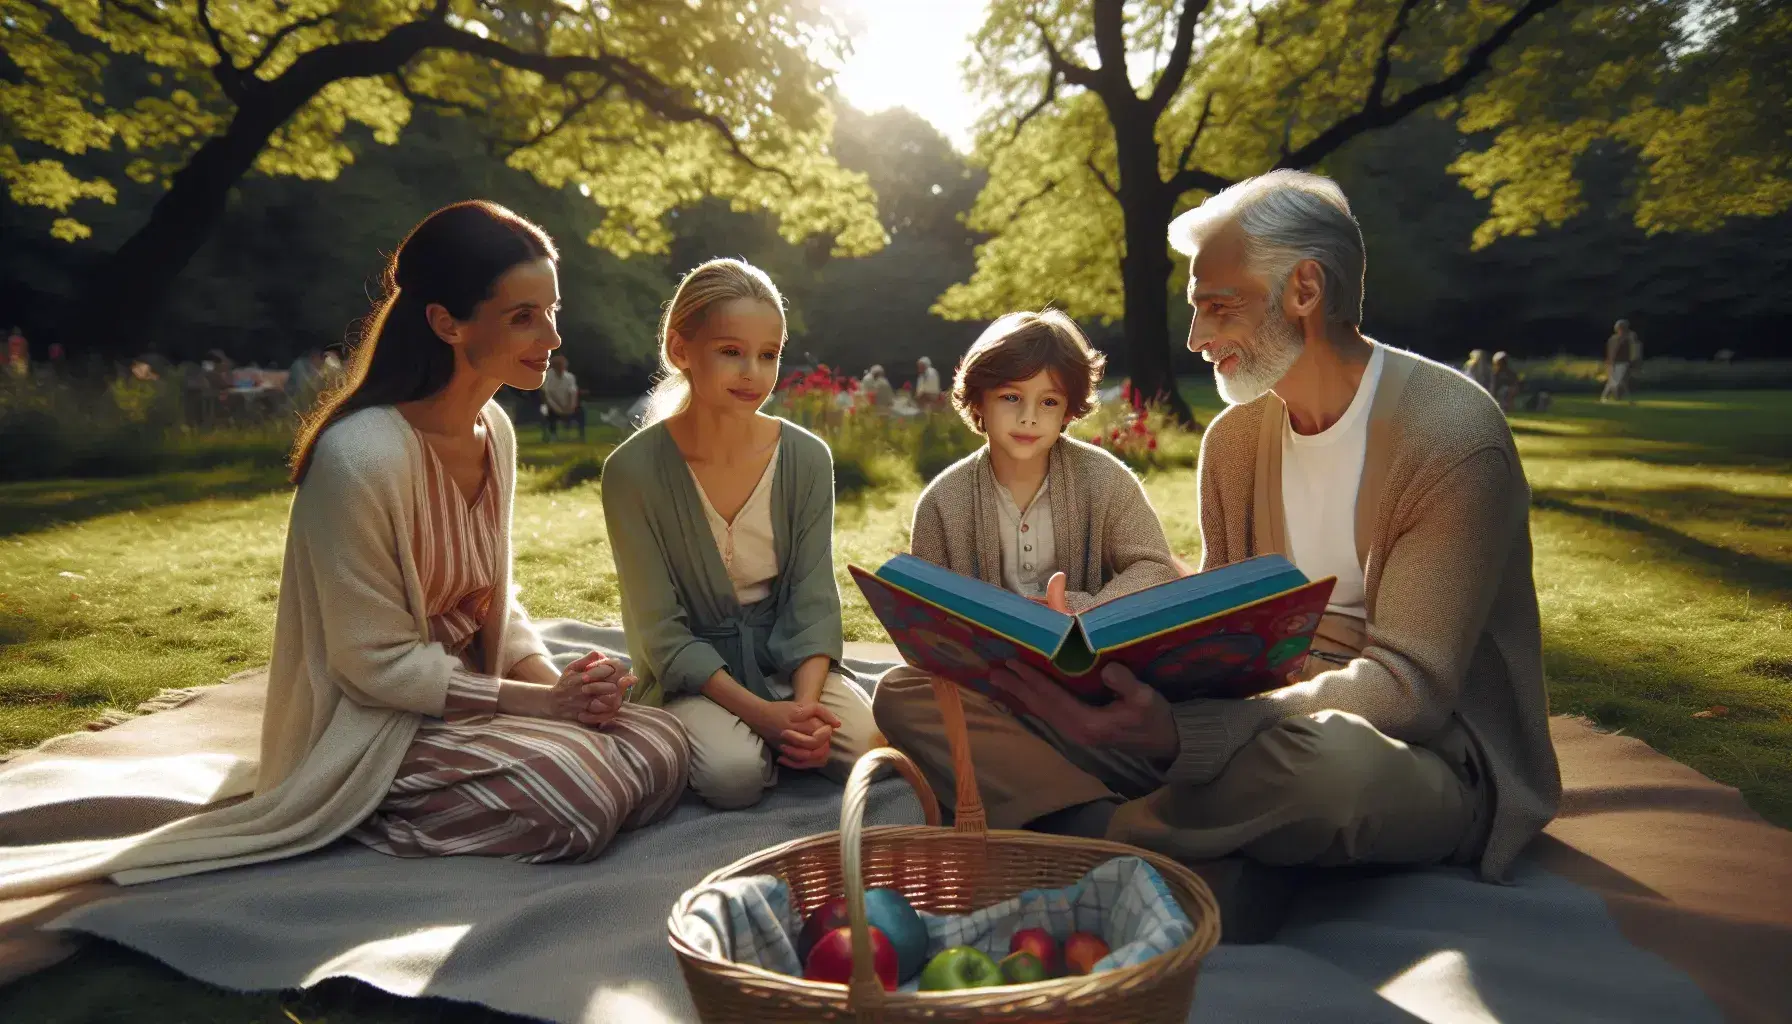 Grupo intergeneracional disfrutando de la lectura en un parque soleado, sentados en una manta azul con un cesto de picnic al lado.